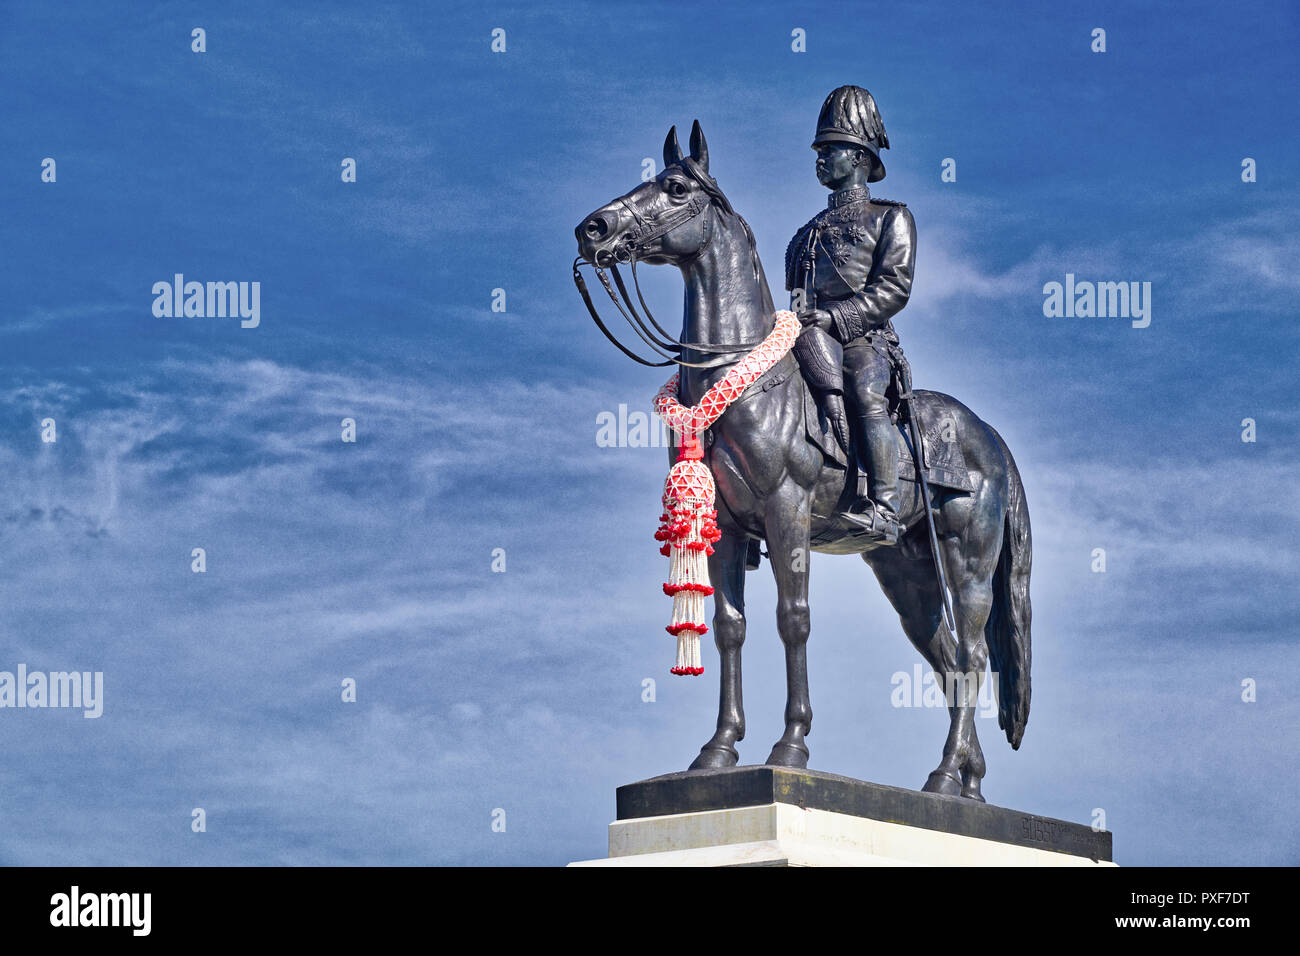 Une statue équestre du roi Chulalongkorn, Rama V, avec vue sur le Grand Plaza Royale en face de la salle du trône Ananta Samakhom à Bangkok, Thaïlande Banque D'Images